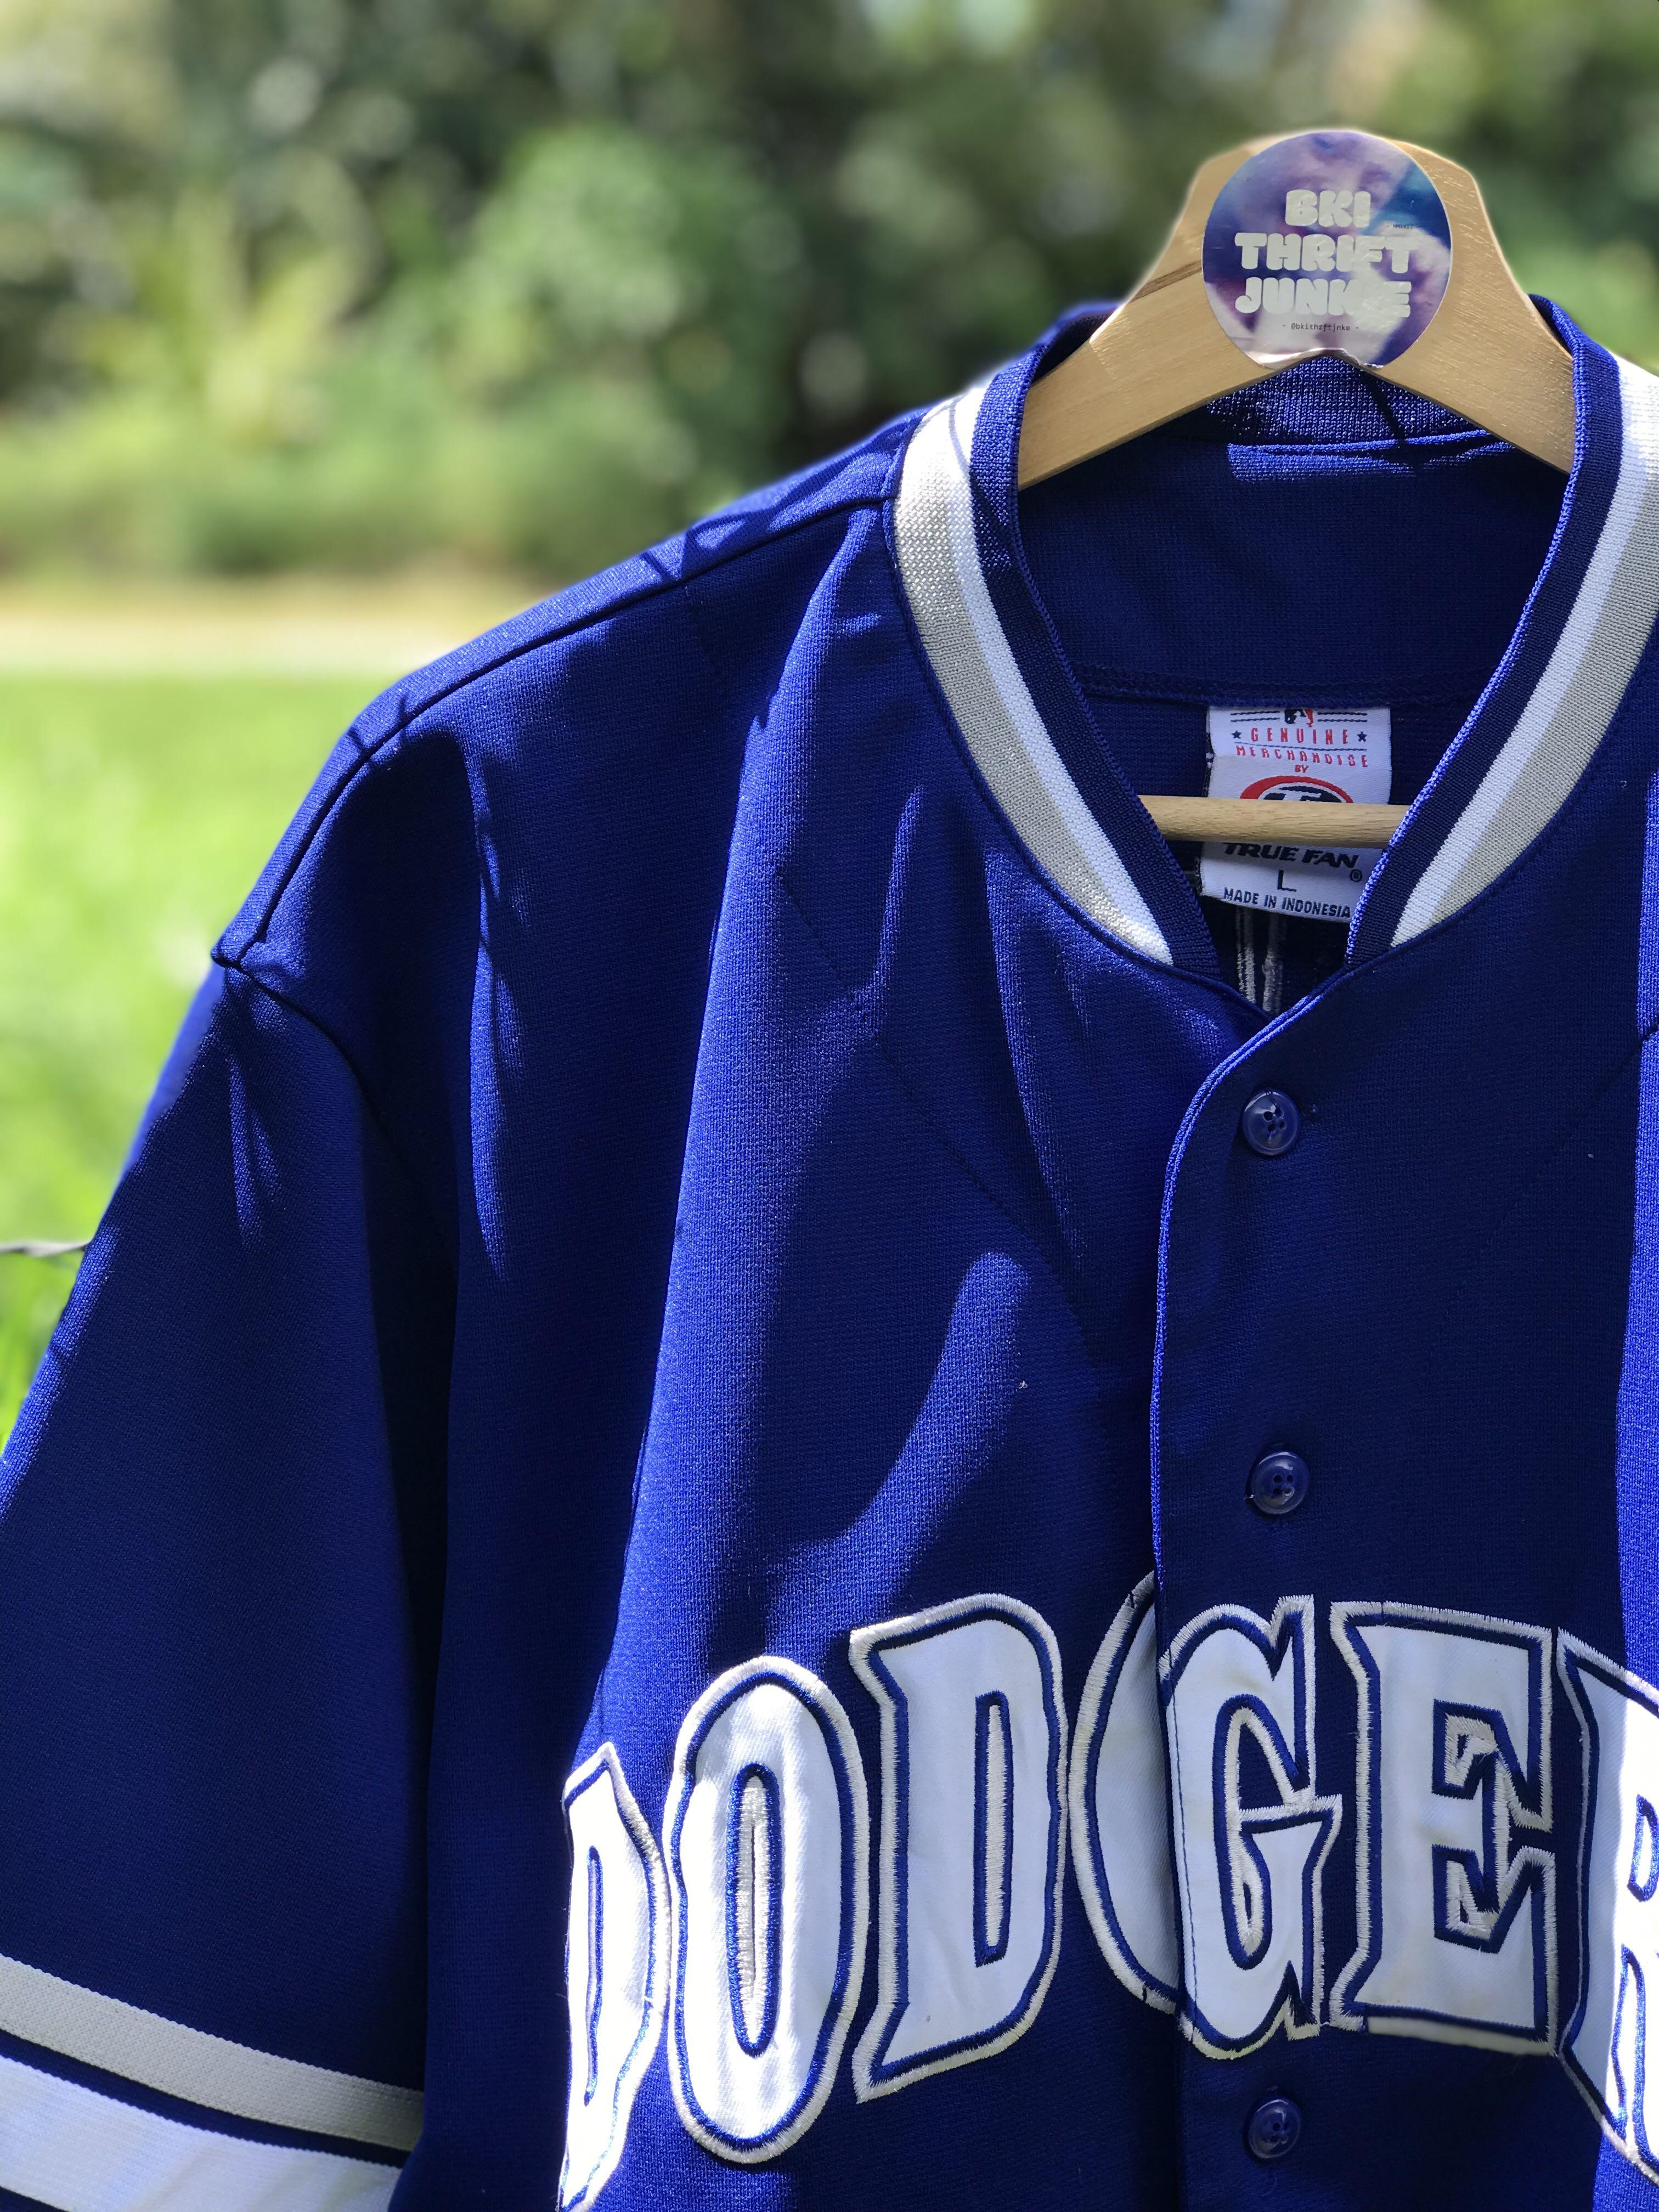 LOS ANGELES DODGERS blue baseball jersey TRUE FAN men's M NOMAR GARCIAPARRA